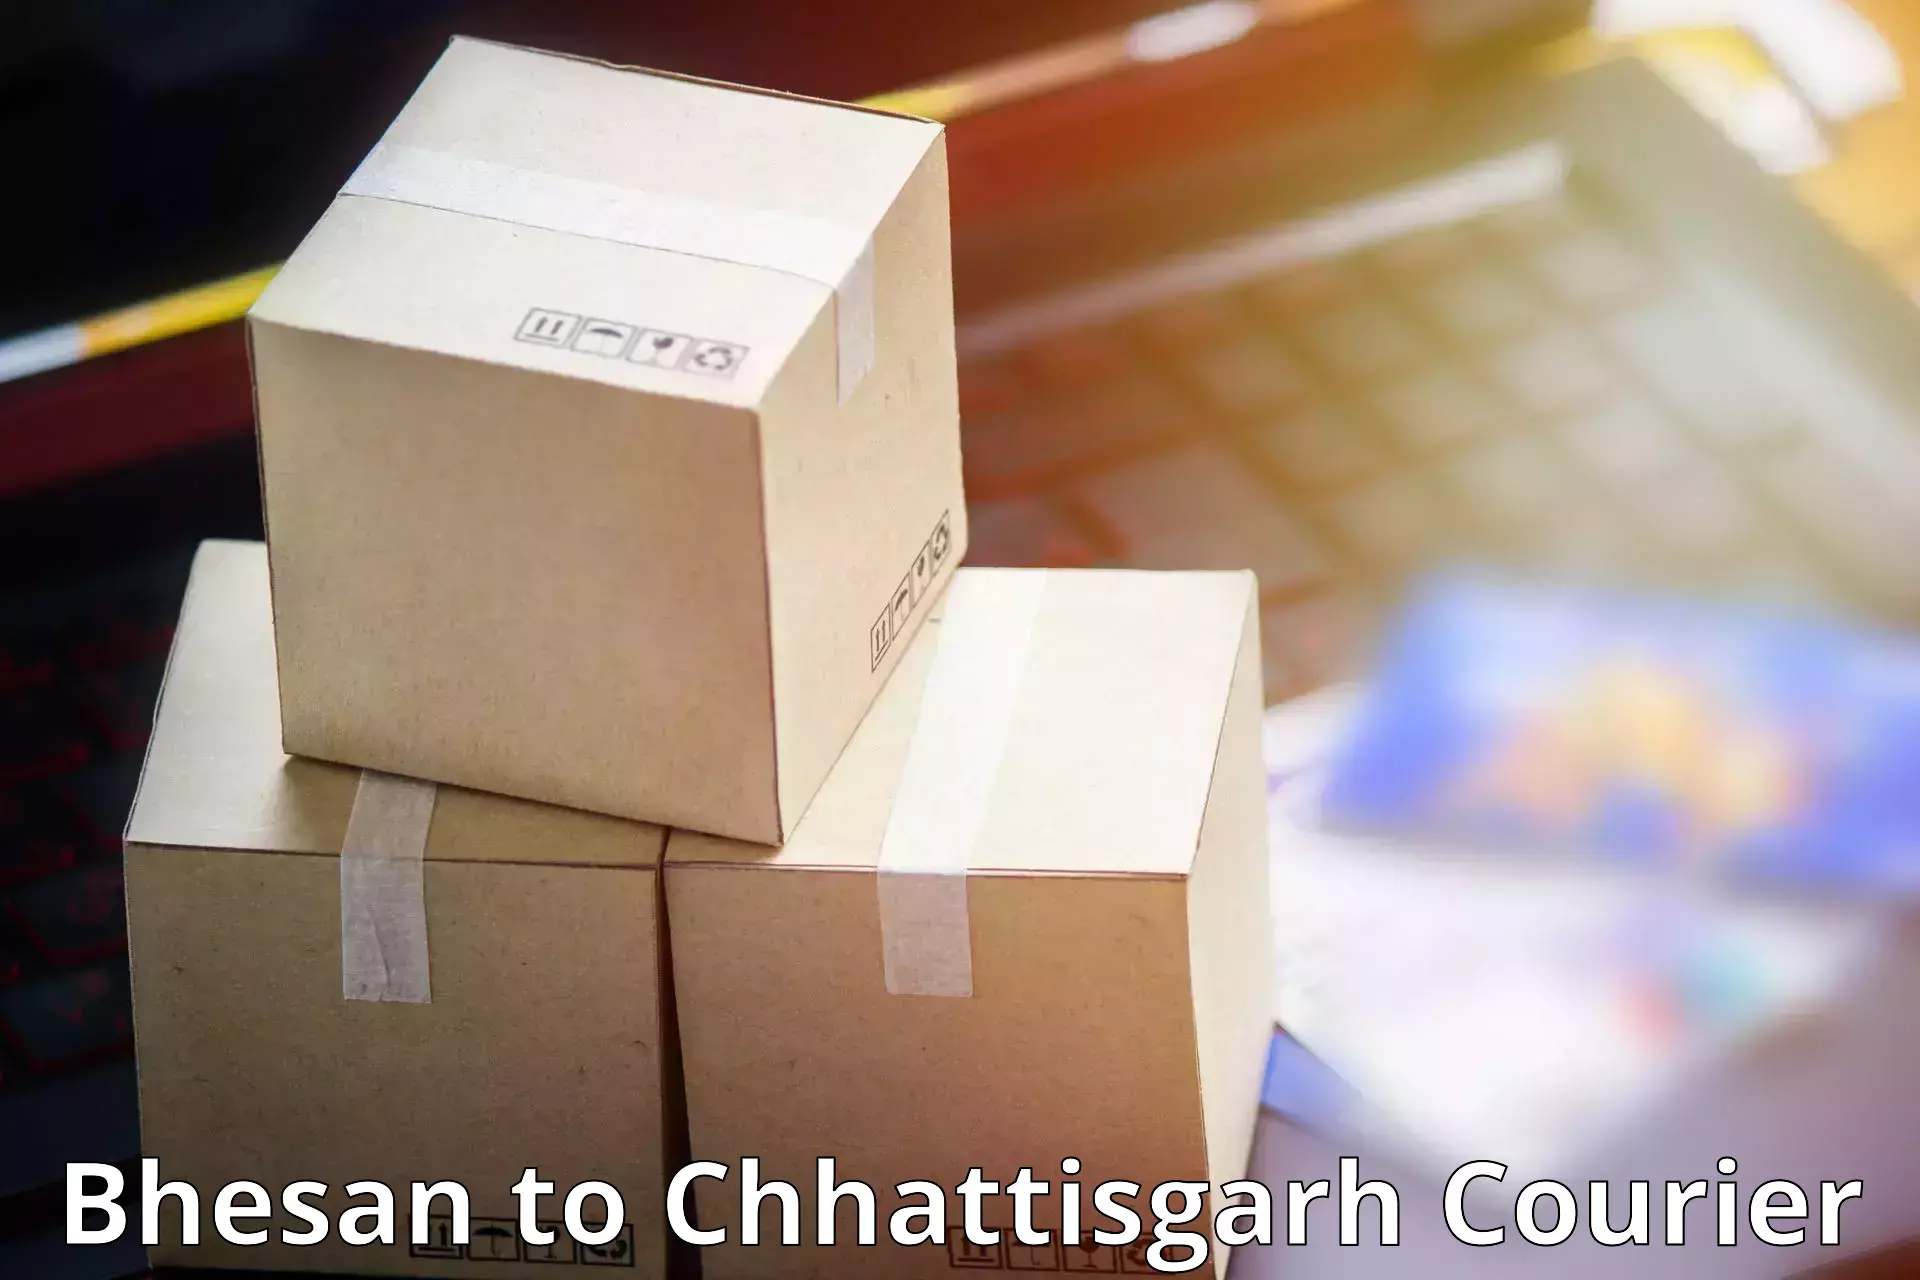 Urgent courier needs Bhesan to Patna Chhattisgarh